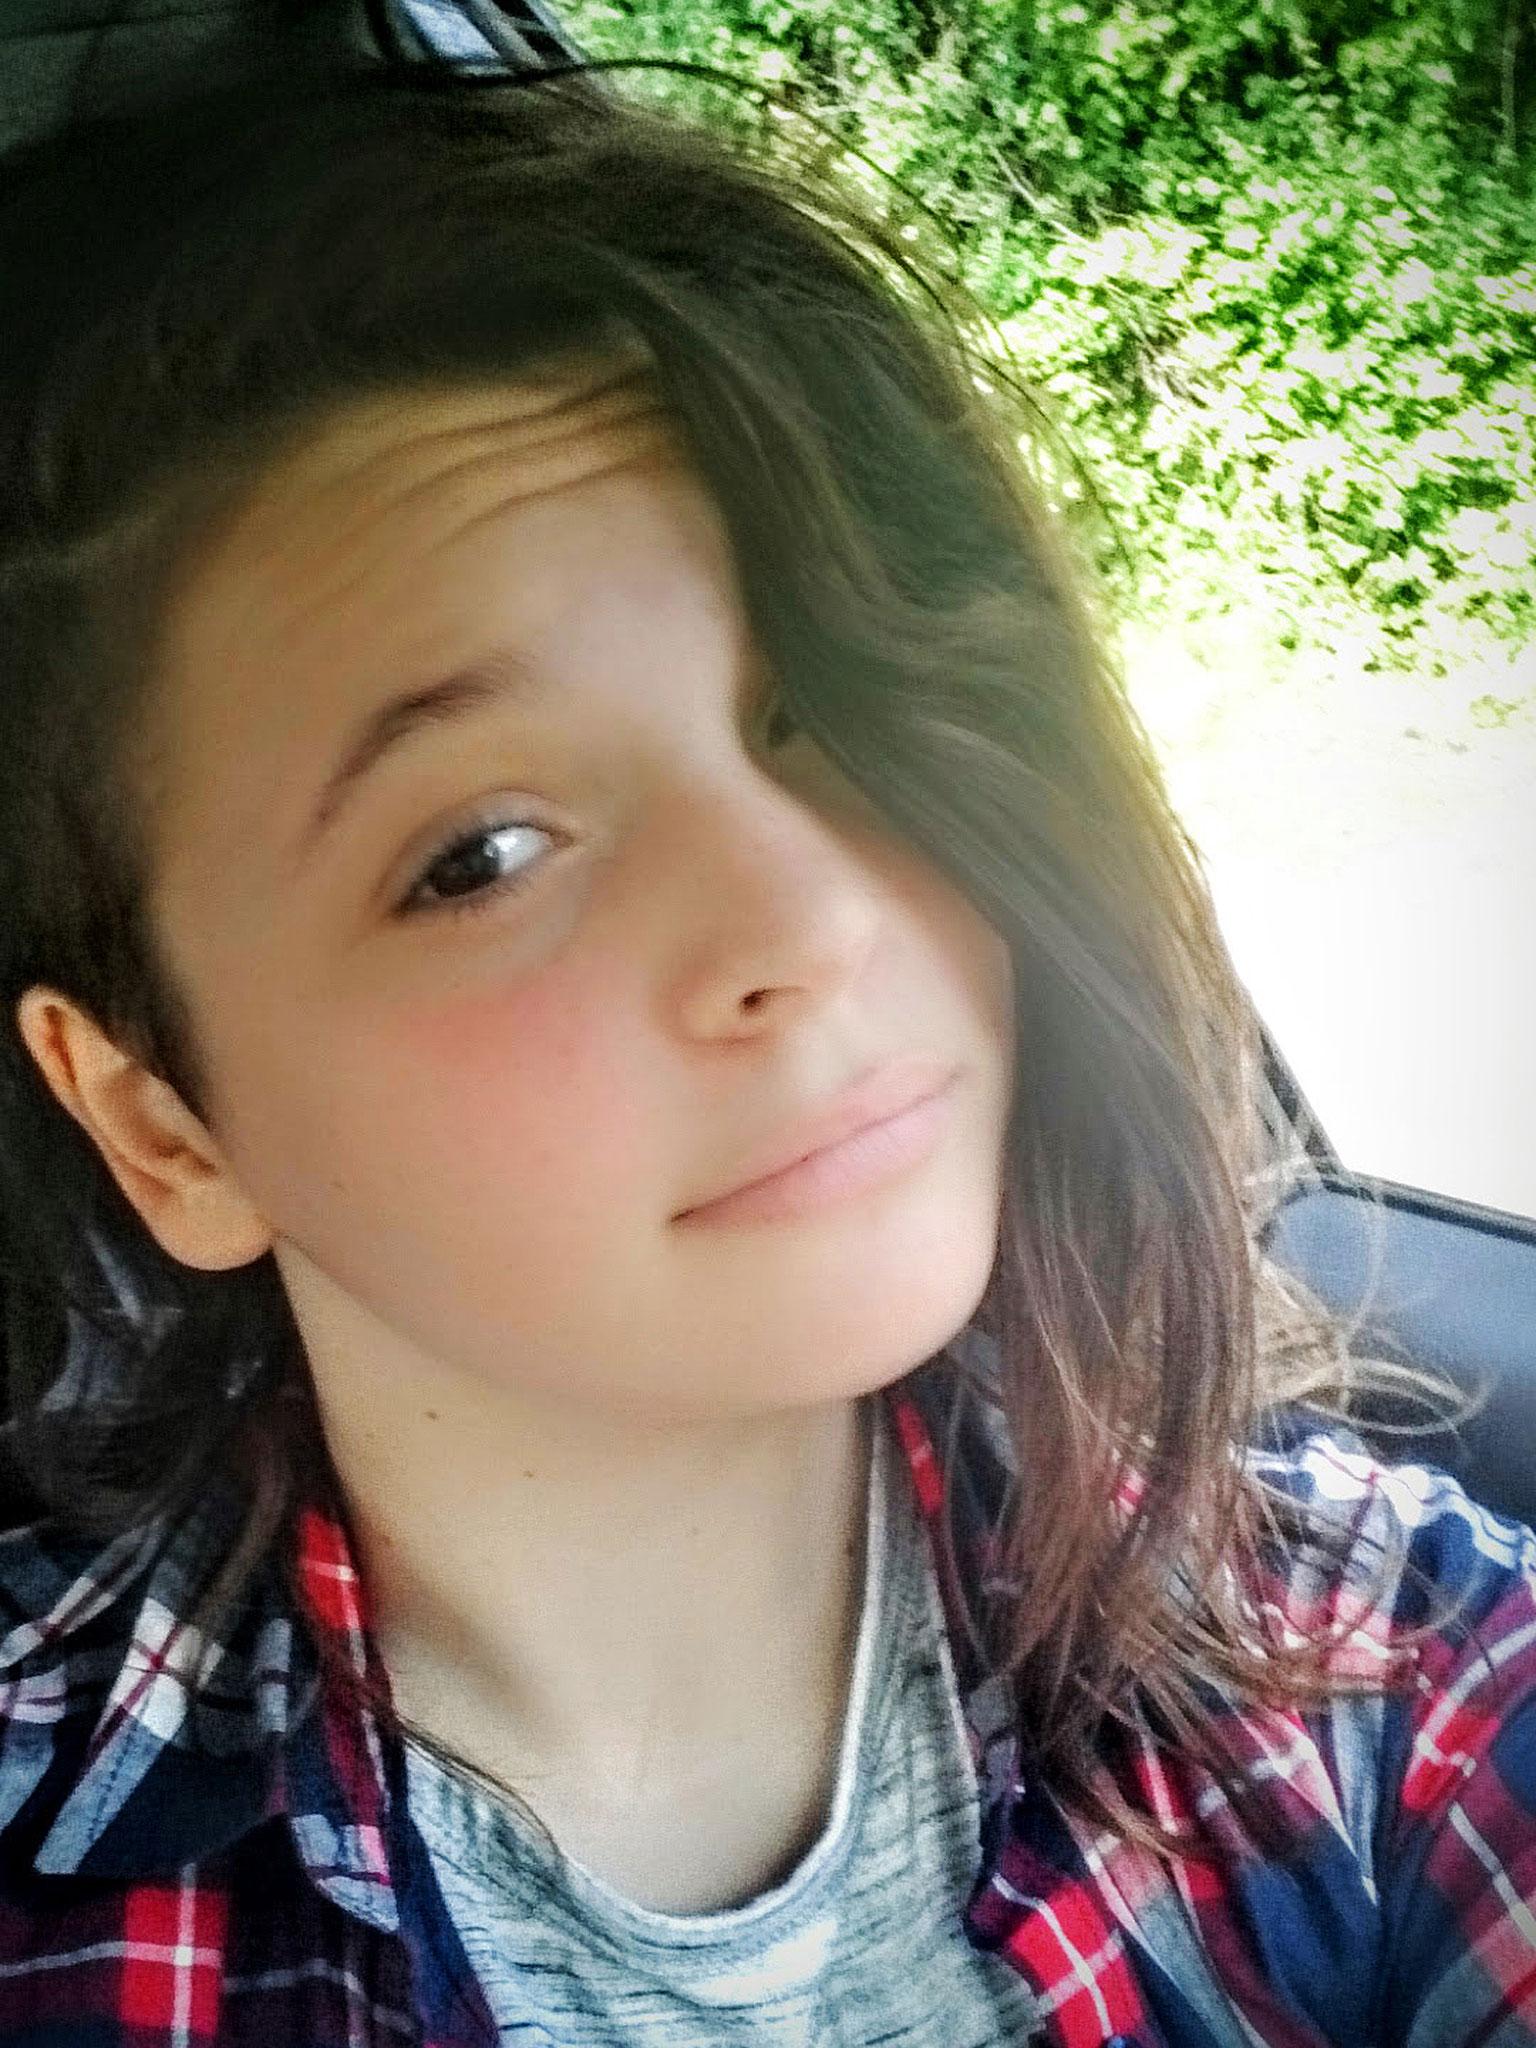 Dorset Schoolgirl Kills Herself In The Woods After Sending Goodbye Facebook Message To Friend 